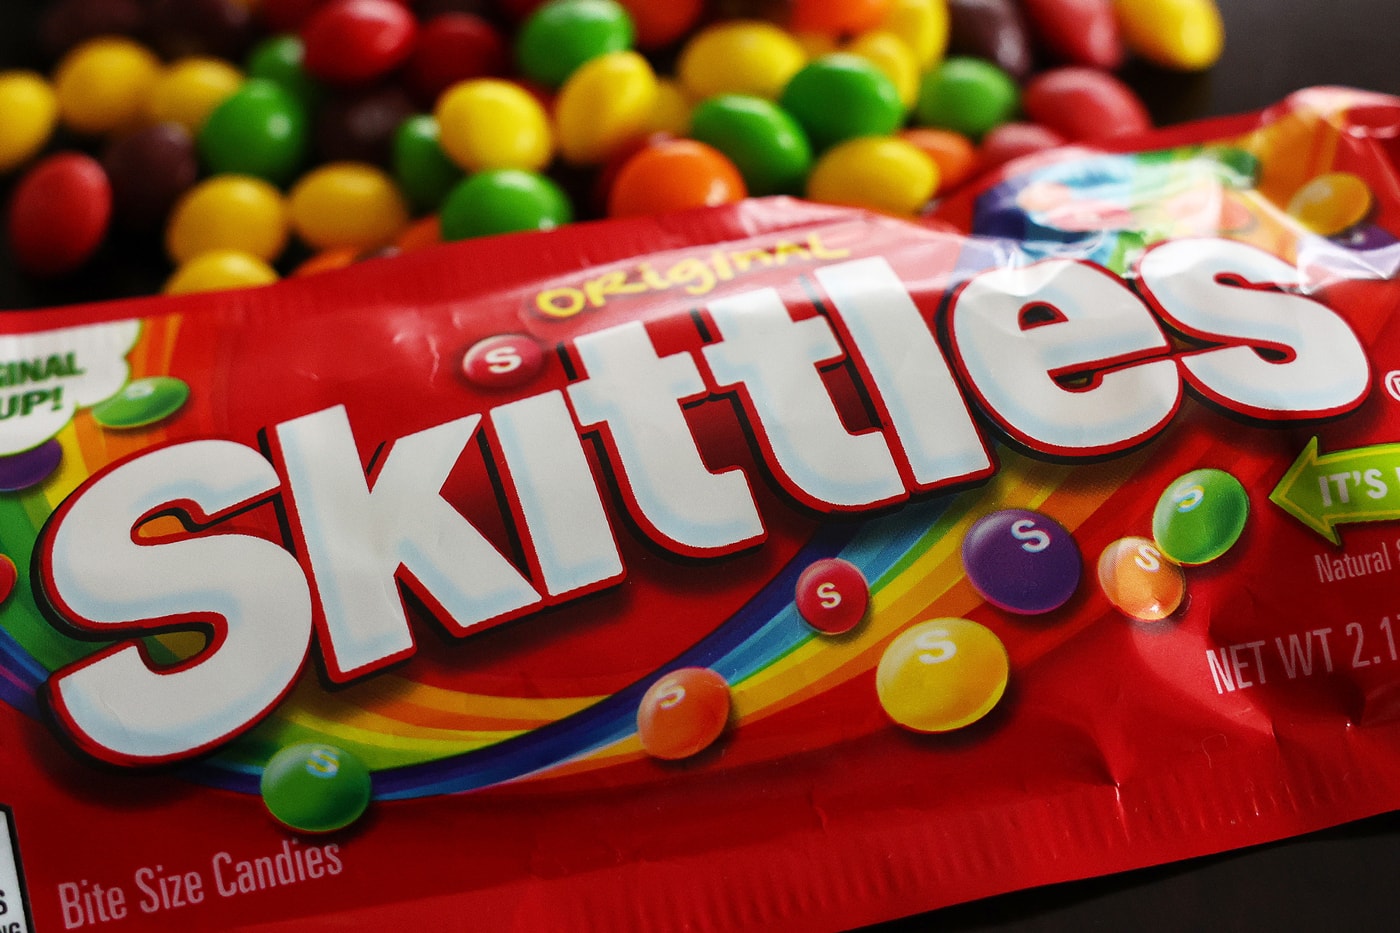 米カリフォルニア州でソフトキャンディ スキットルズが2027年以降販売禁止に California Governor gavin newsom Signs AB 418 skittles candy ingredients ban